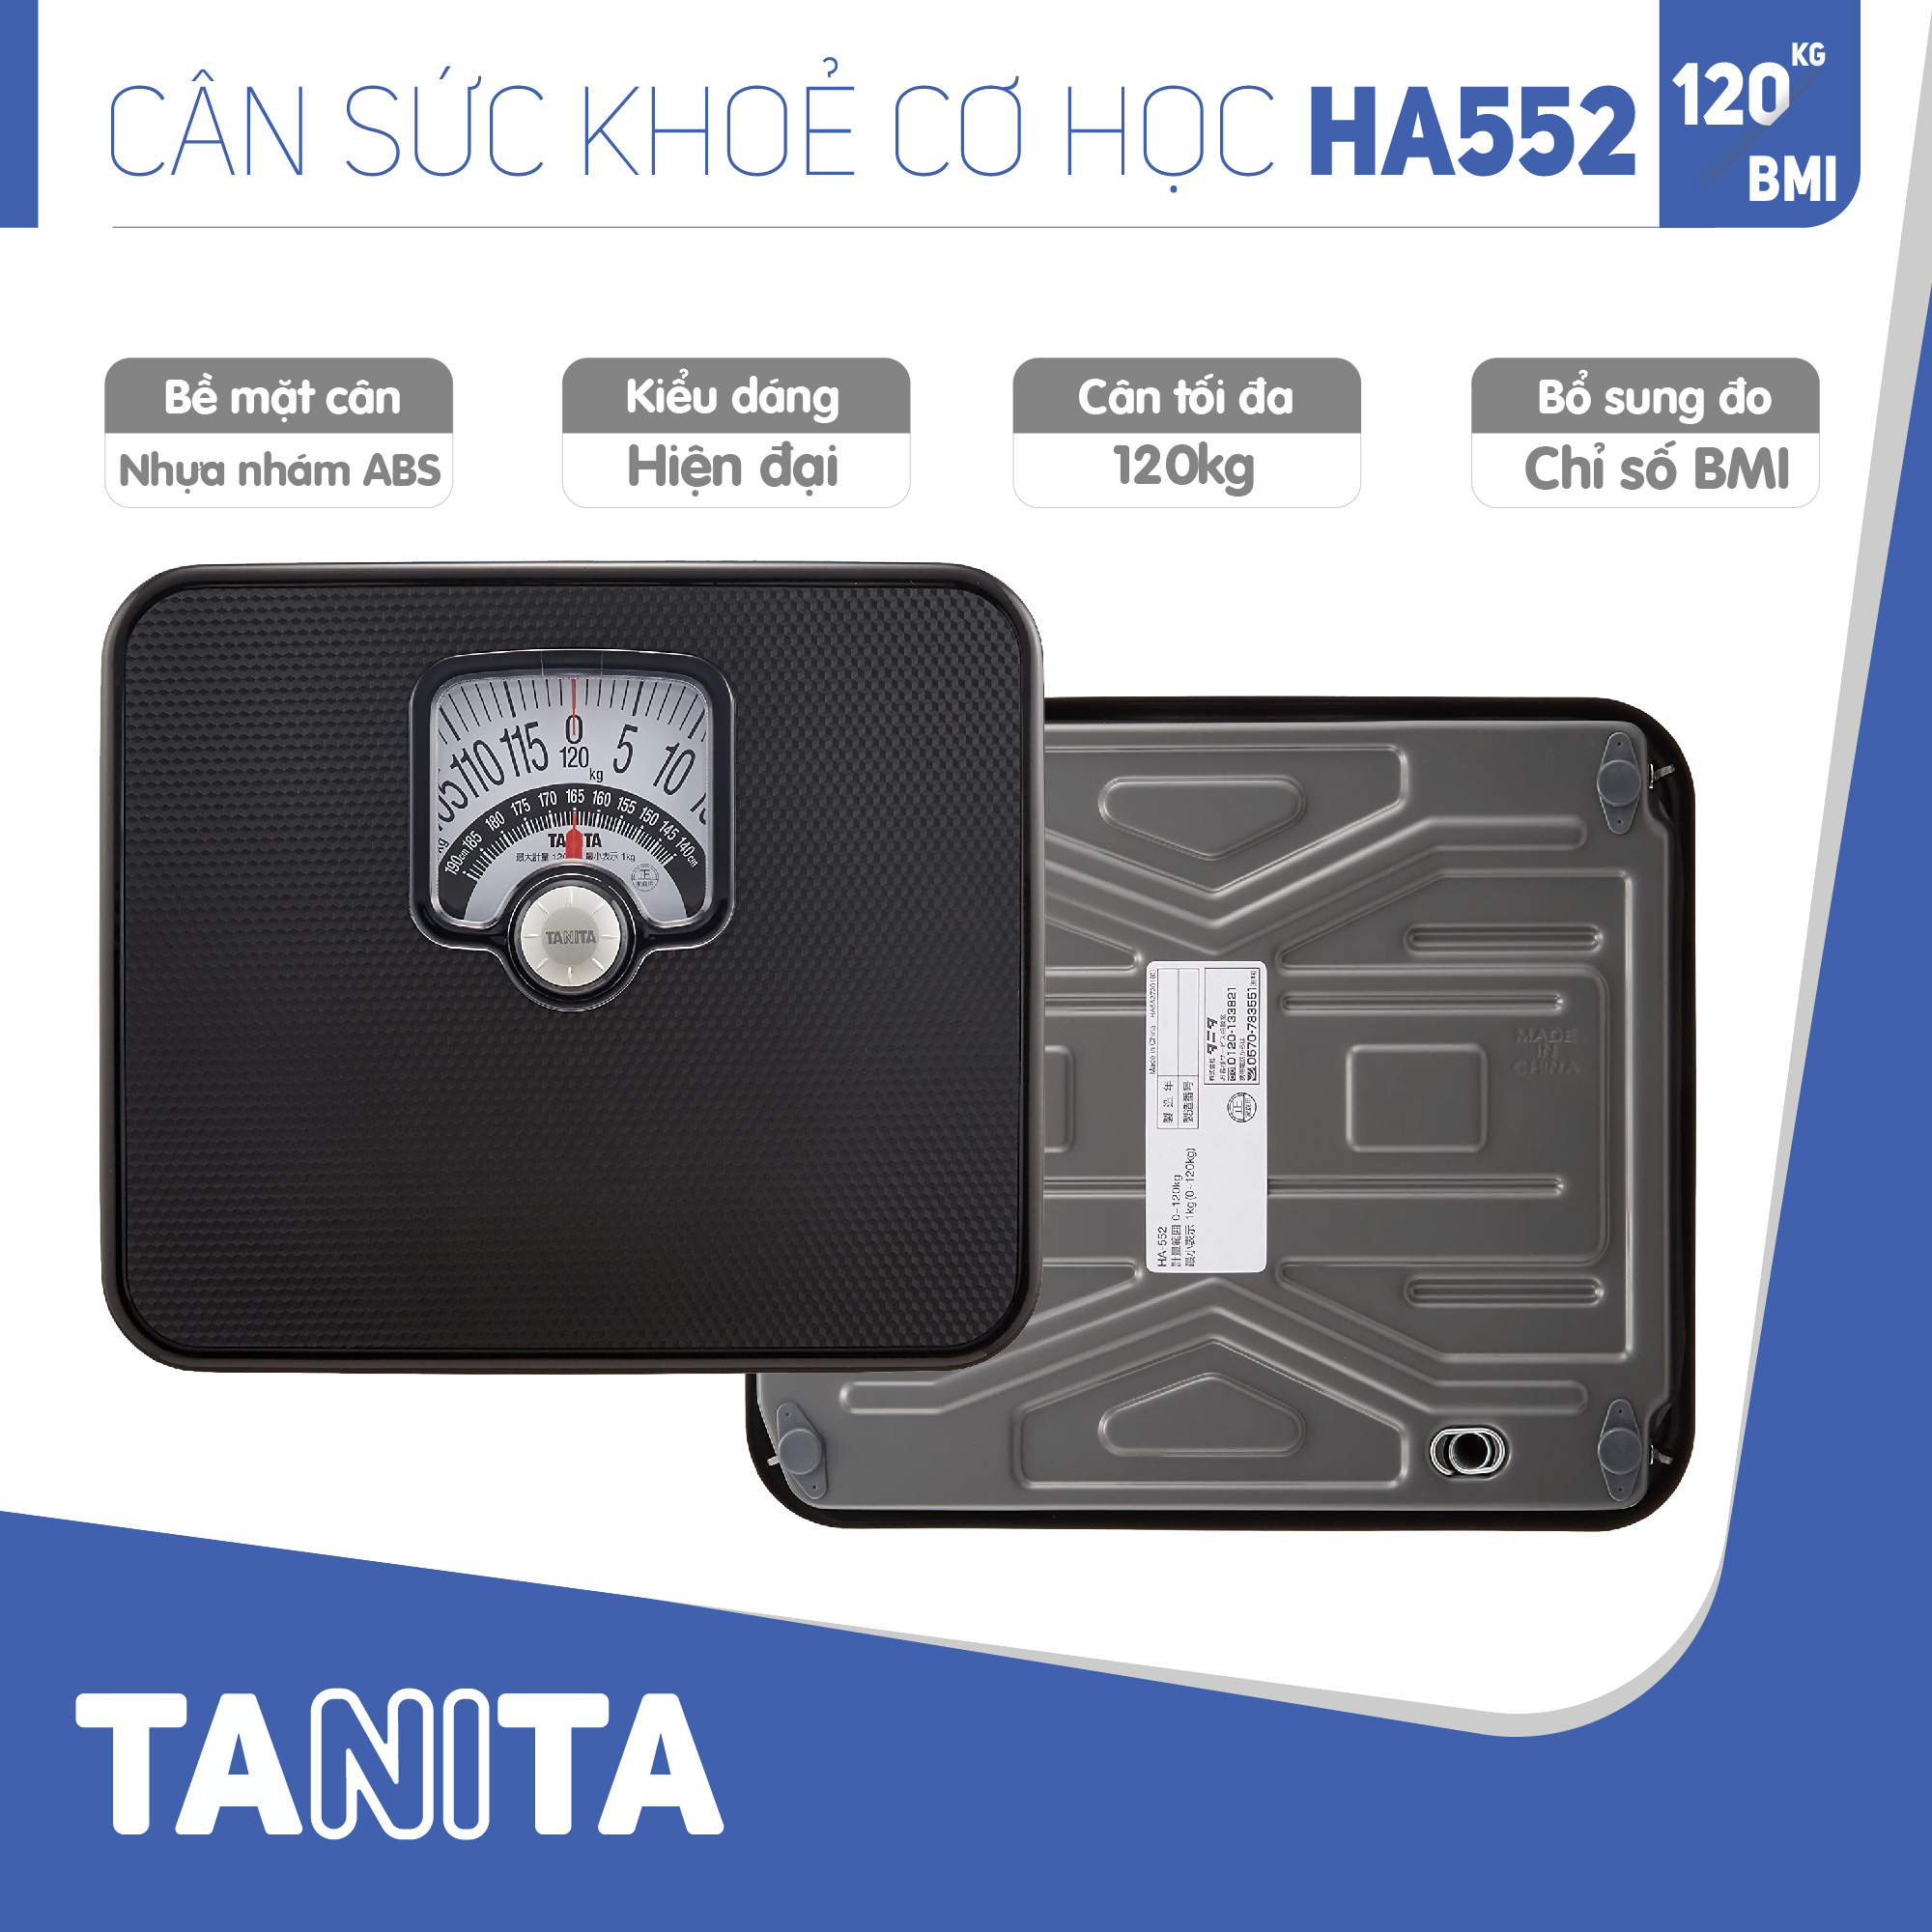 Cân sức khoẻ cơ học TANITA HA552,chính hãng nhật bản,cân cơ học,cân chính hãng,cân nhật bản,cân sức khoẻ y tế,cân sức khoẻ gia đình,cân sức khoẻ cao cấp,120kg,Cân phân tích chỉ số cơ thể,Cân sức khoẻ min